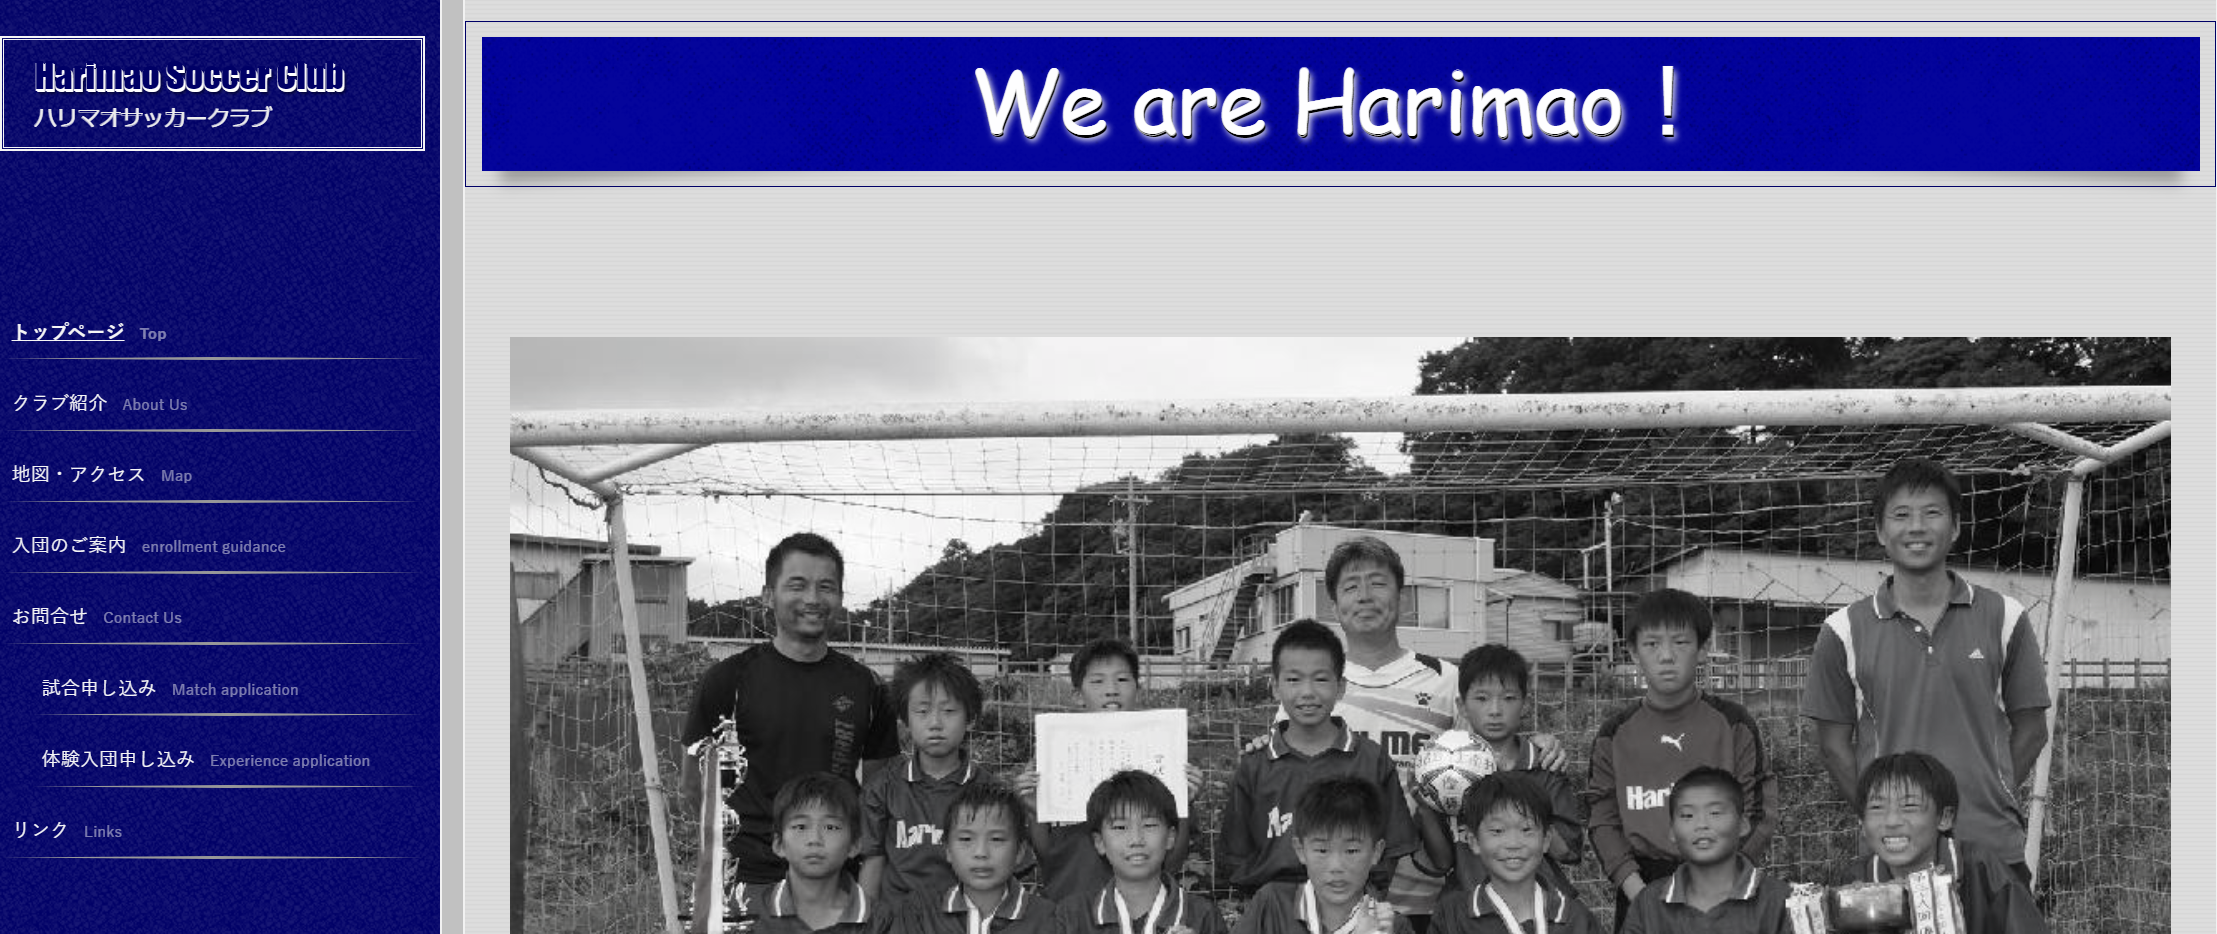 ハリマオサッカークラブ